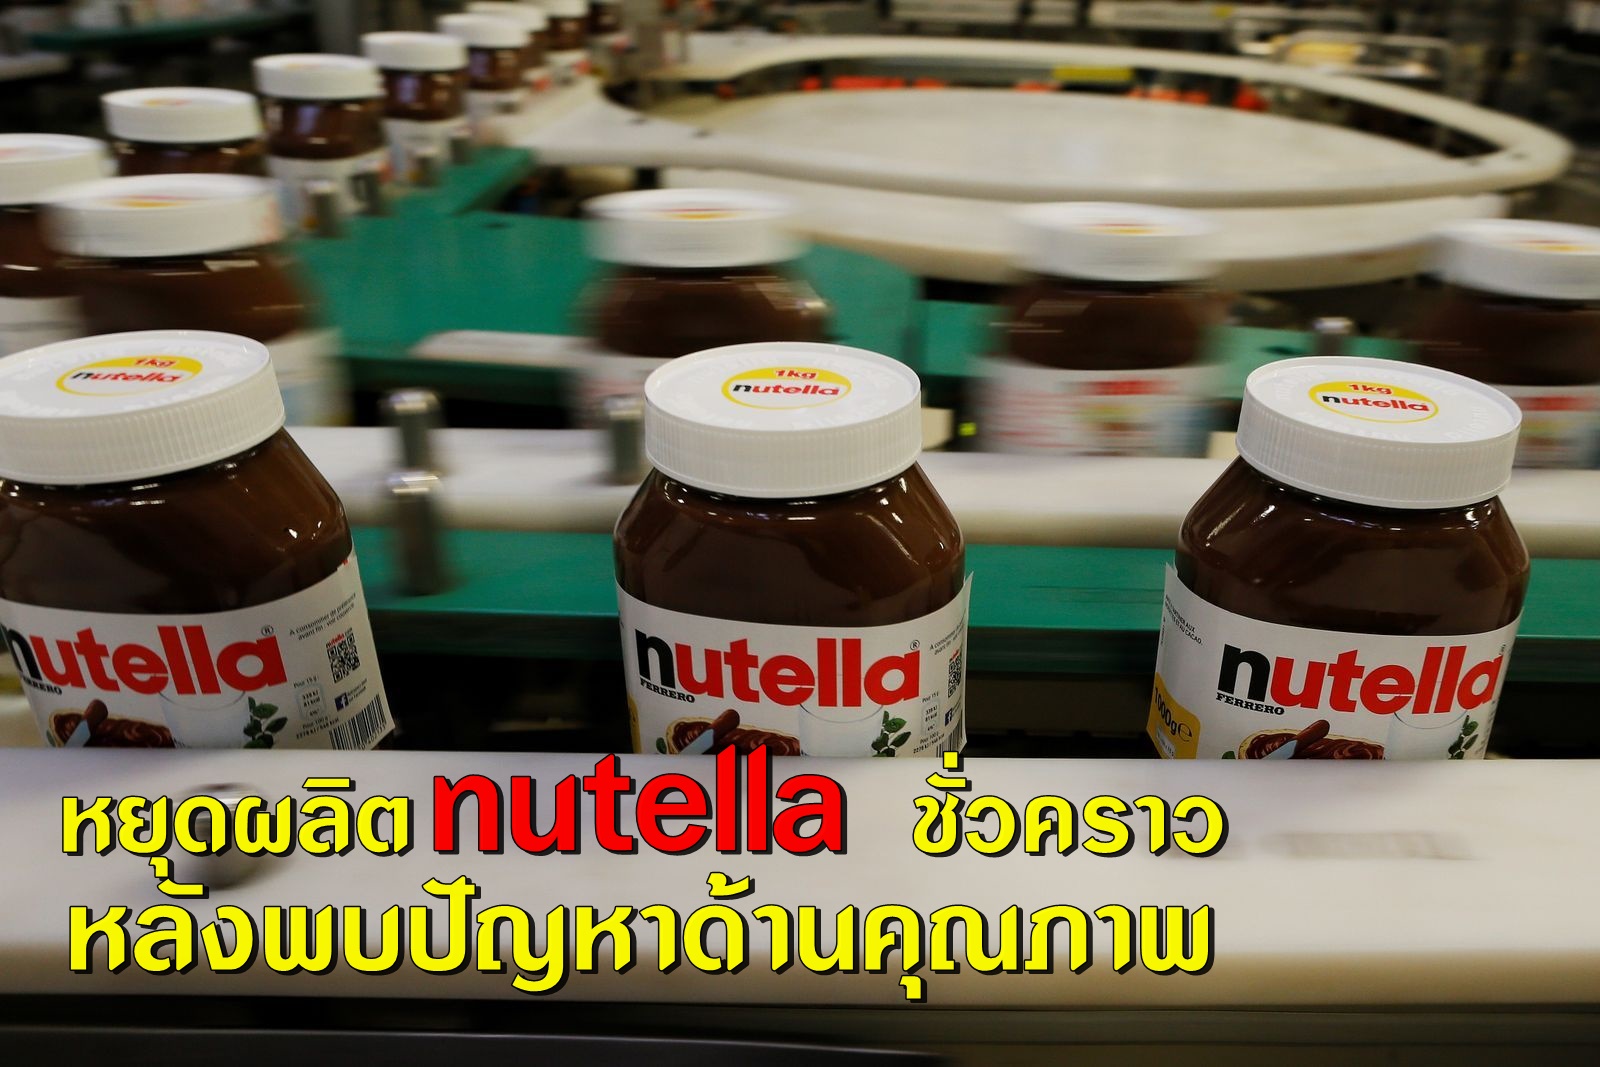 หยุดผลิต nutella ชั่วคราว หลังพบปัญหาคุณภาพ